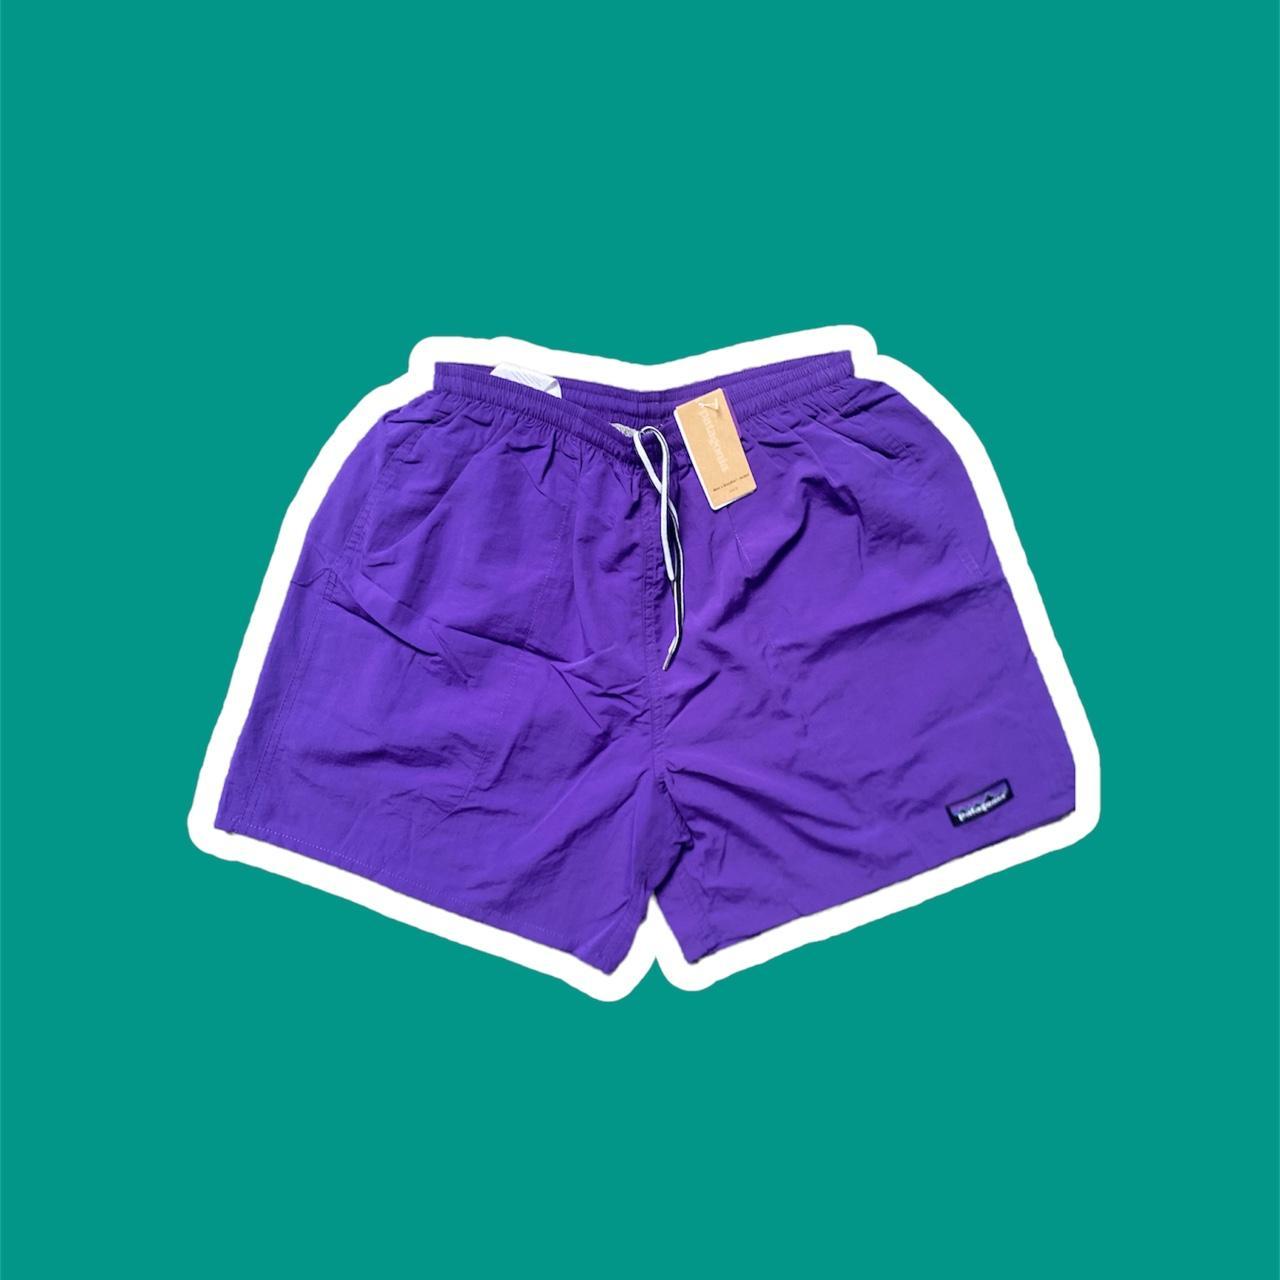 Patagonia Men's Shorts | Depop